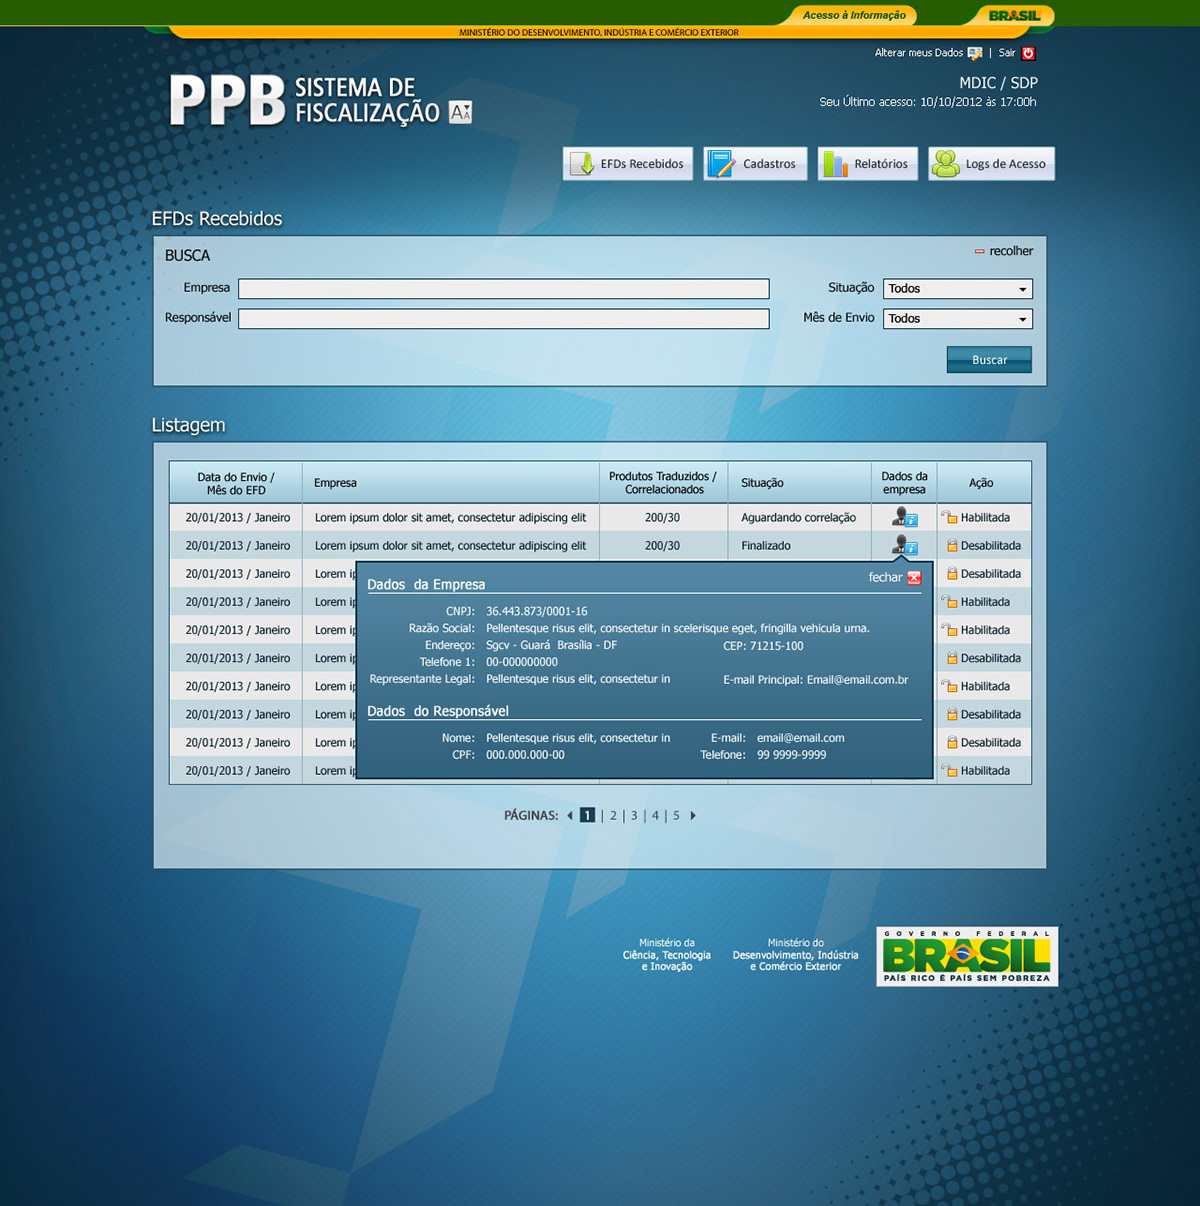 Governo Government Brazil brasilia Distrito Federal site sitio beualtiful system sistema Webdesign design